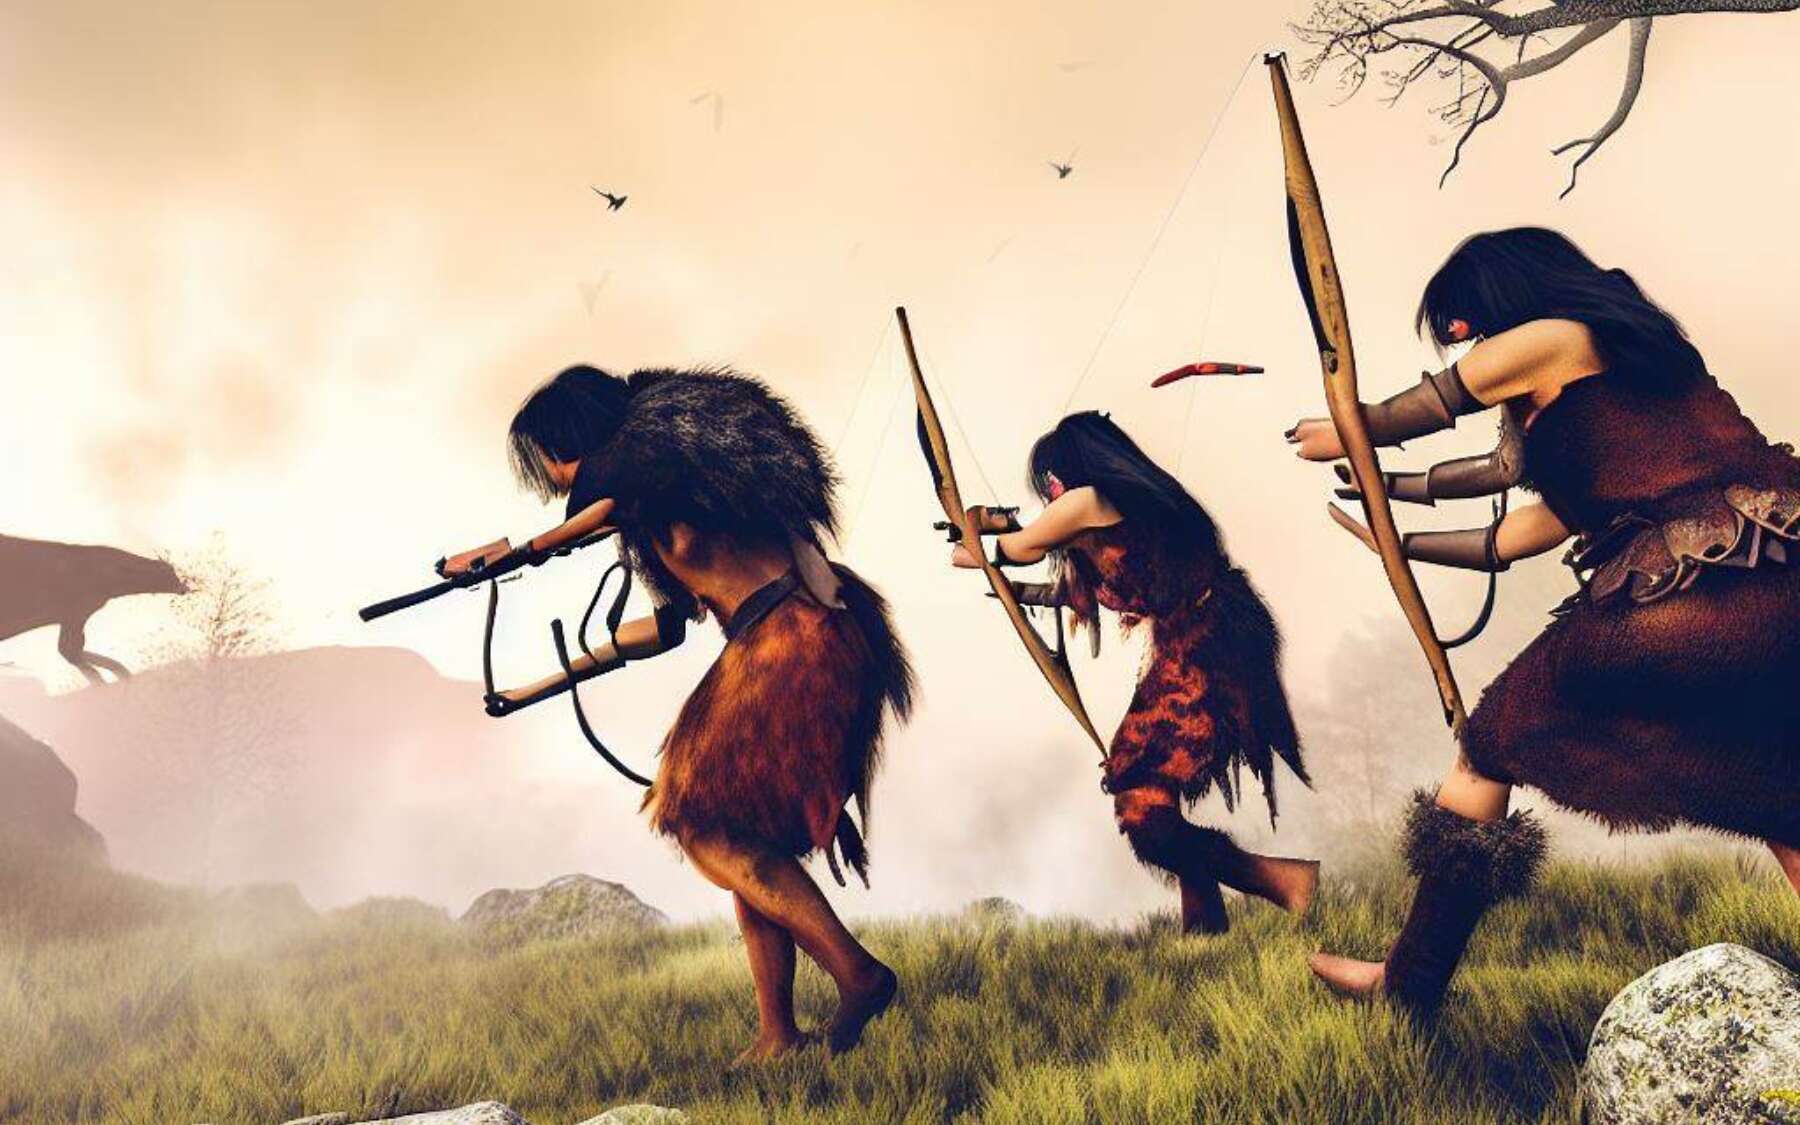 Des scientifiques mettent fin à un vieux stéréotype sur les femmes à la préhistoire